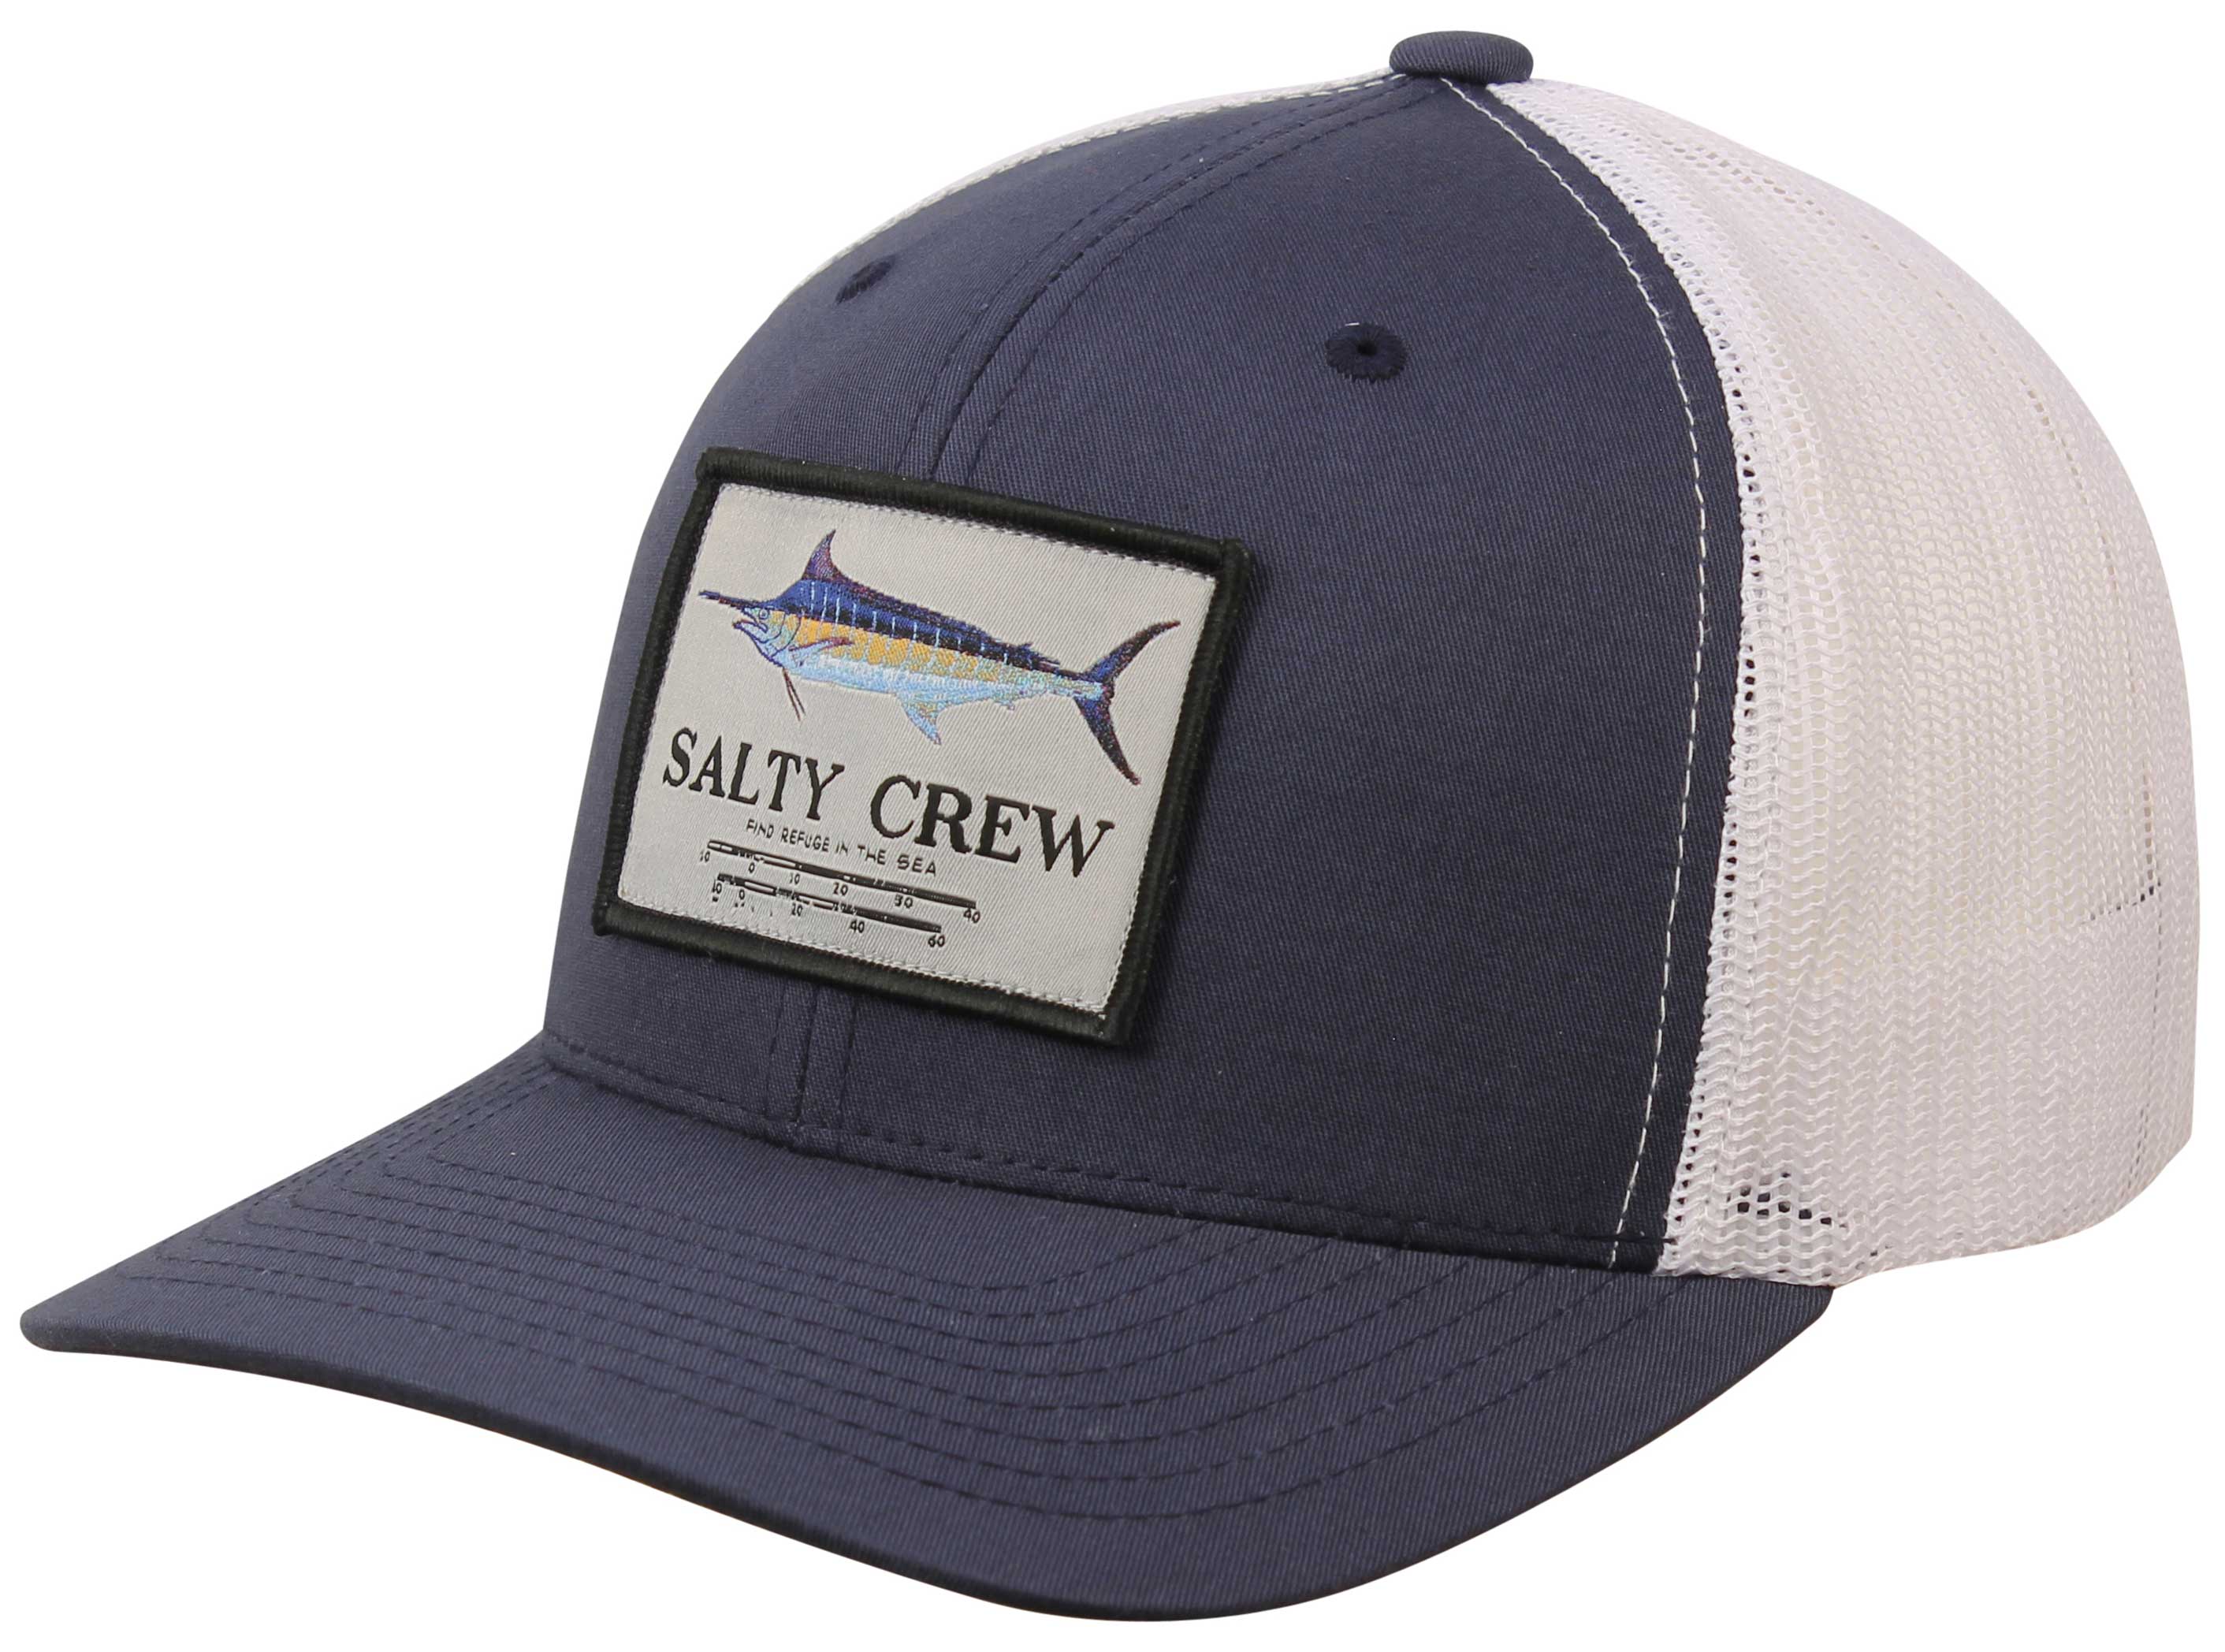 Salty Crew Marlin Mount Trucker Hat Navy/White OS